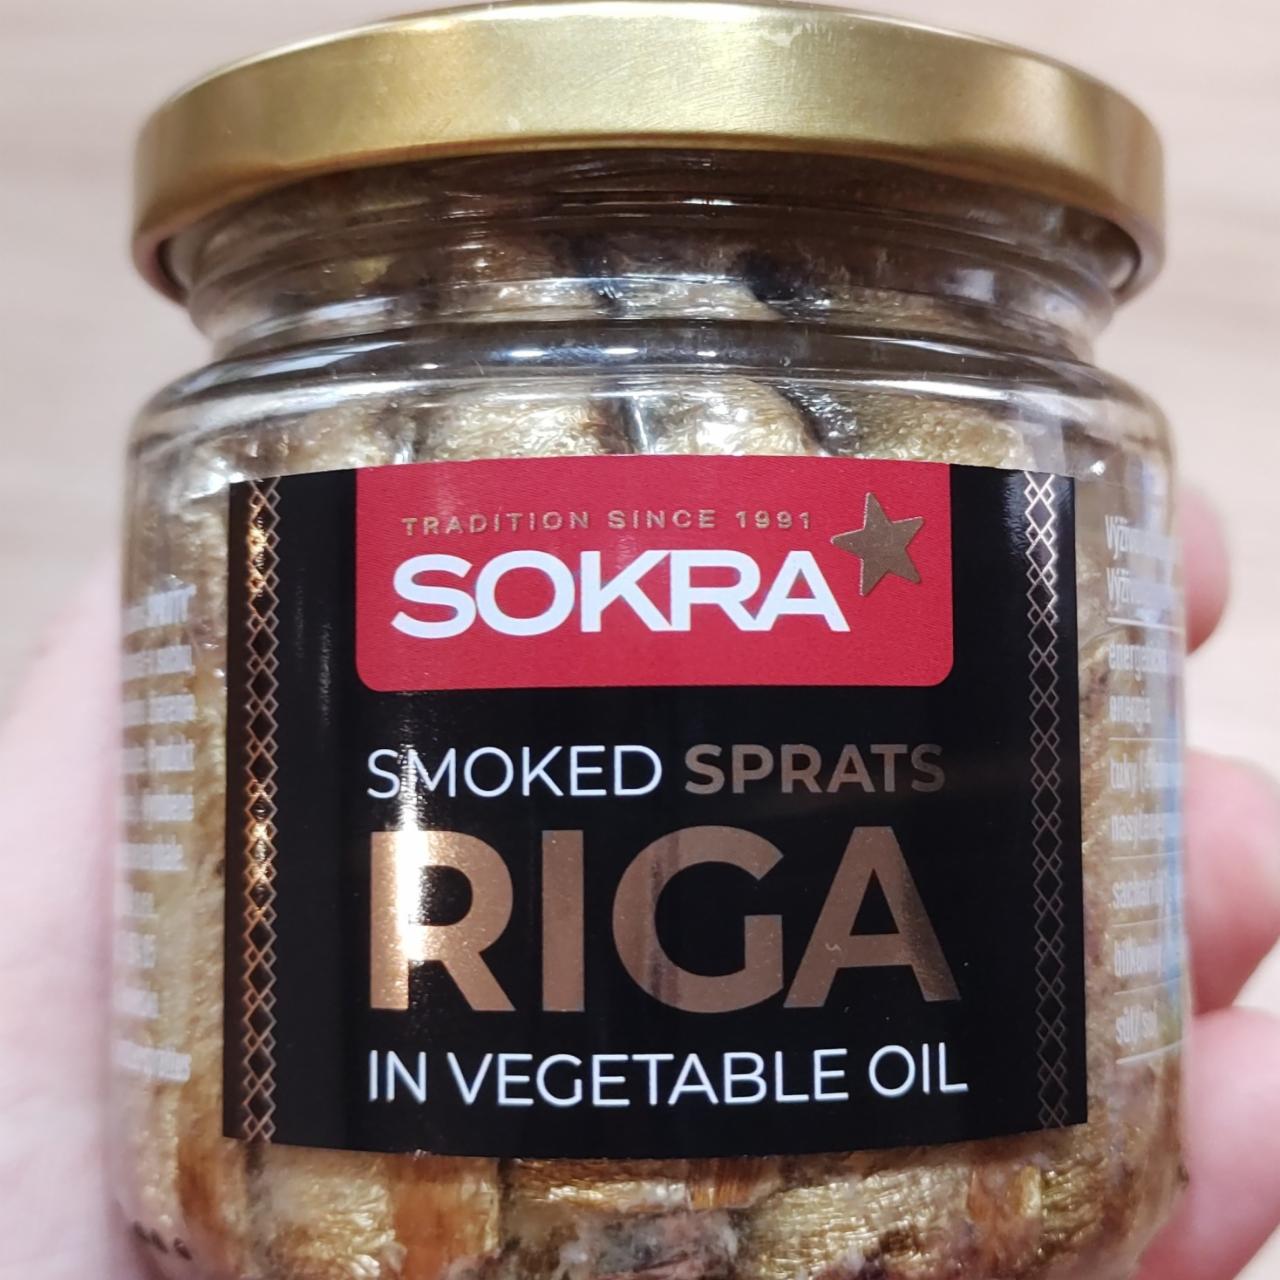 Fotografie - Smoked Sprats Riga in Vegetable Oil Sokra